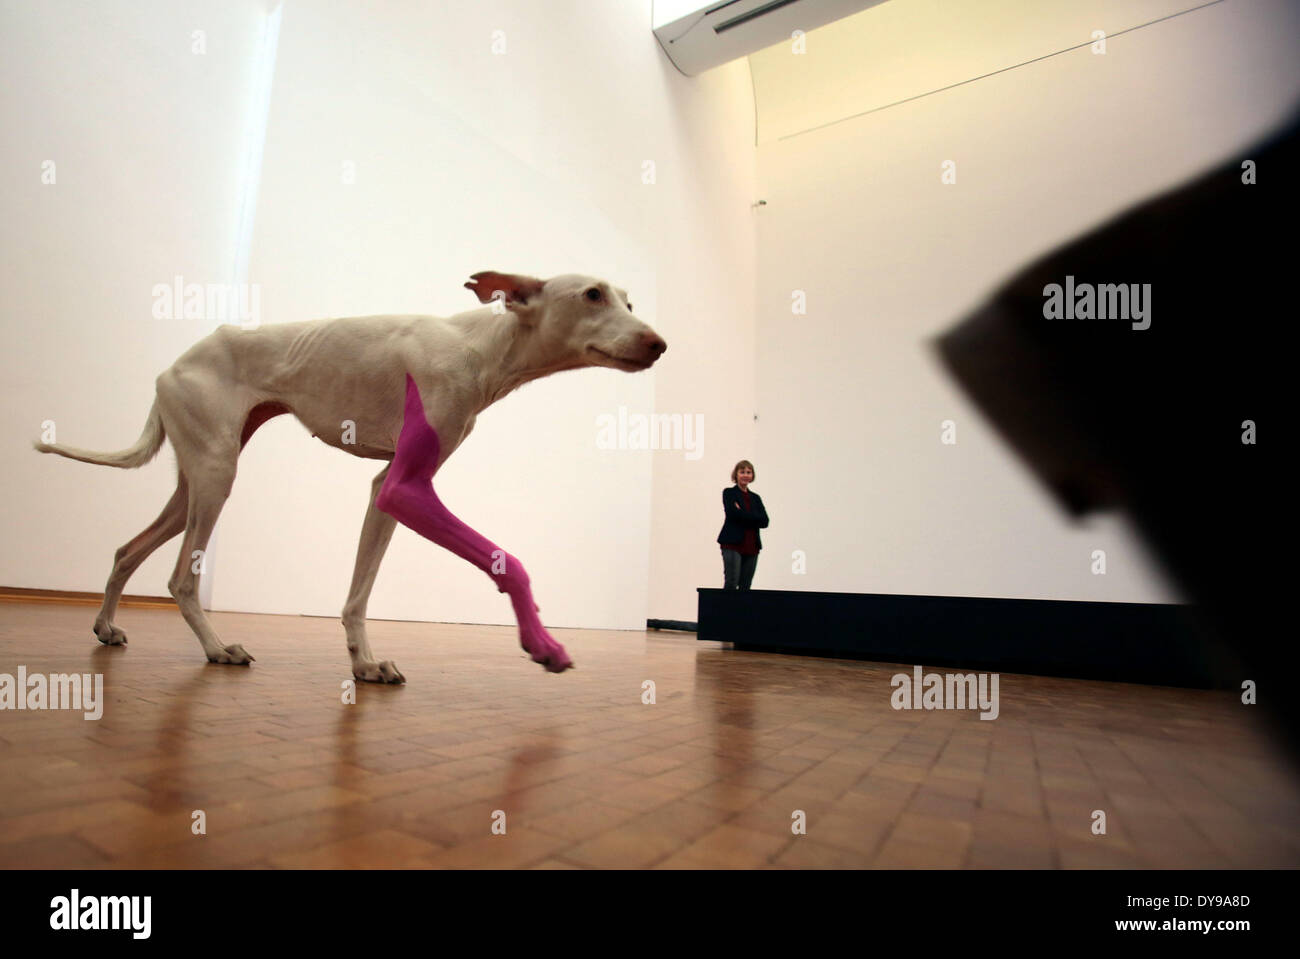 Colonia, Germania. Decimo Apr, 2014. Un cane con un colorato di rosa gamba  passeggiate attraverso la mostra dell artista francese Pierre Huyghe al  Museo Ludwig di Colonia, Germania, 10 aprile 2014. La